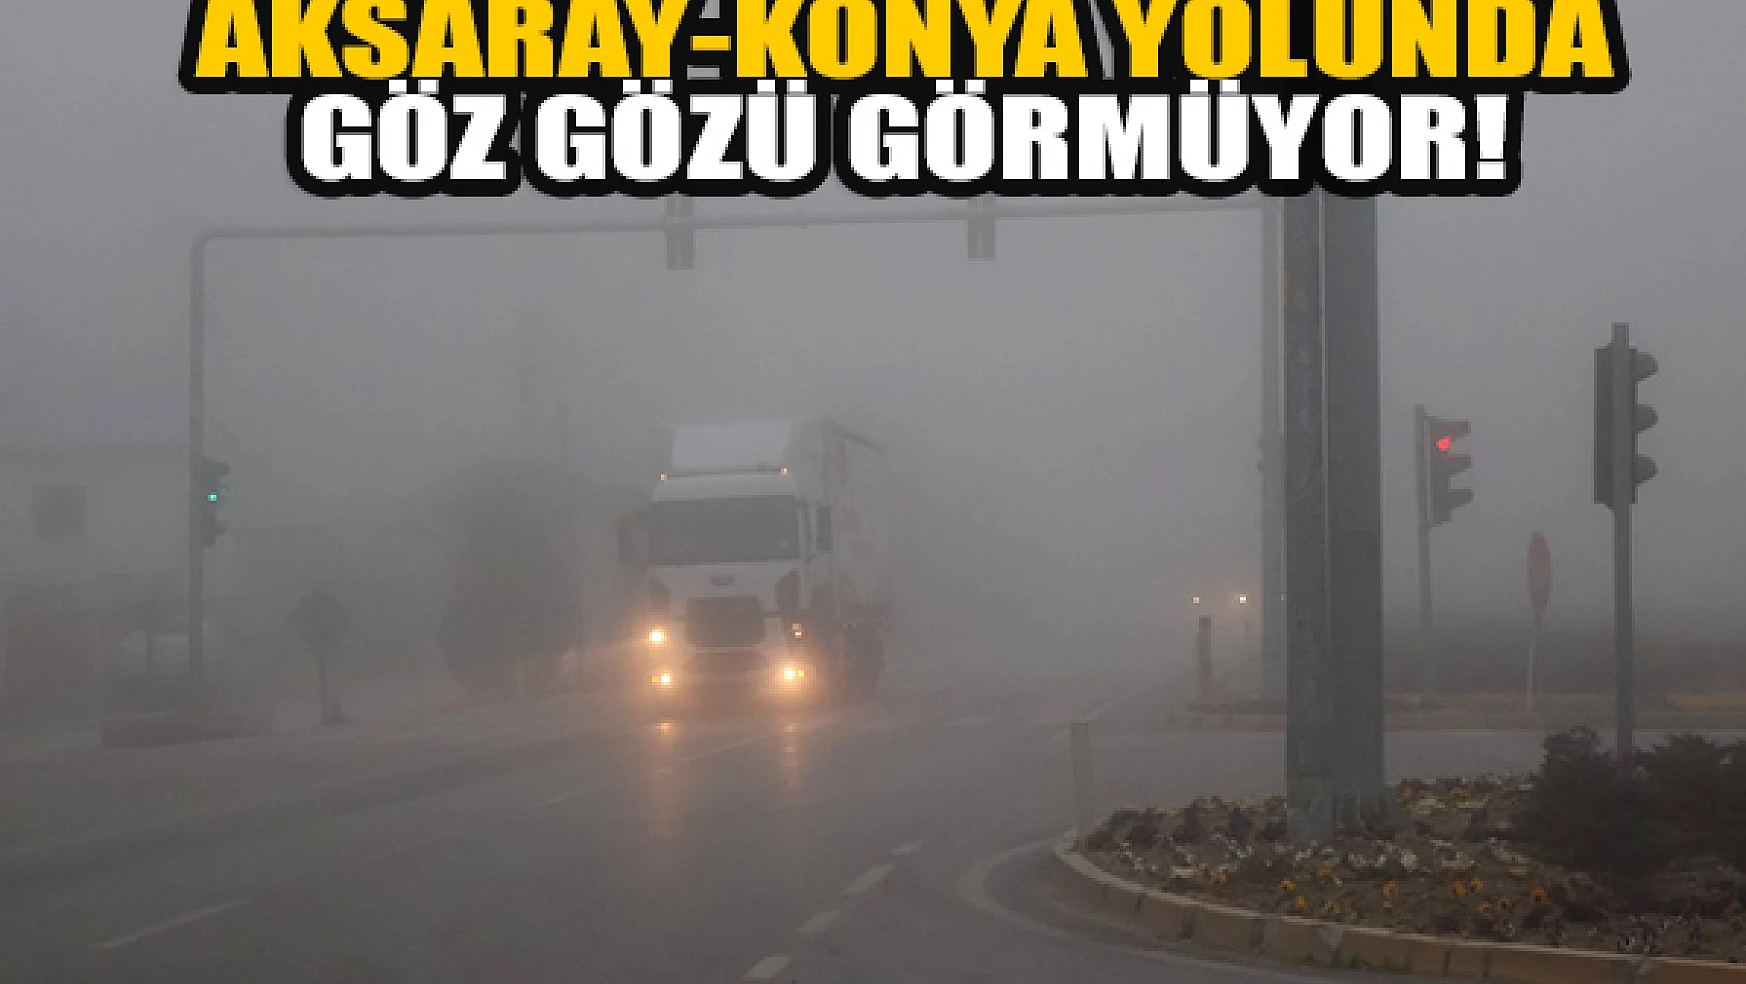  Aksaray-Konya yolunda göz gözü görmüyor!